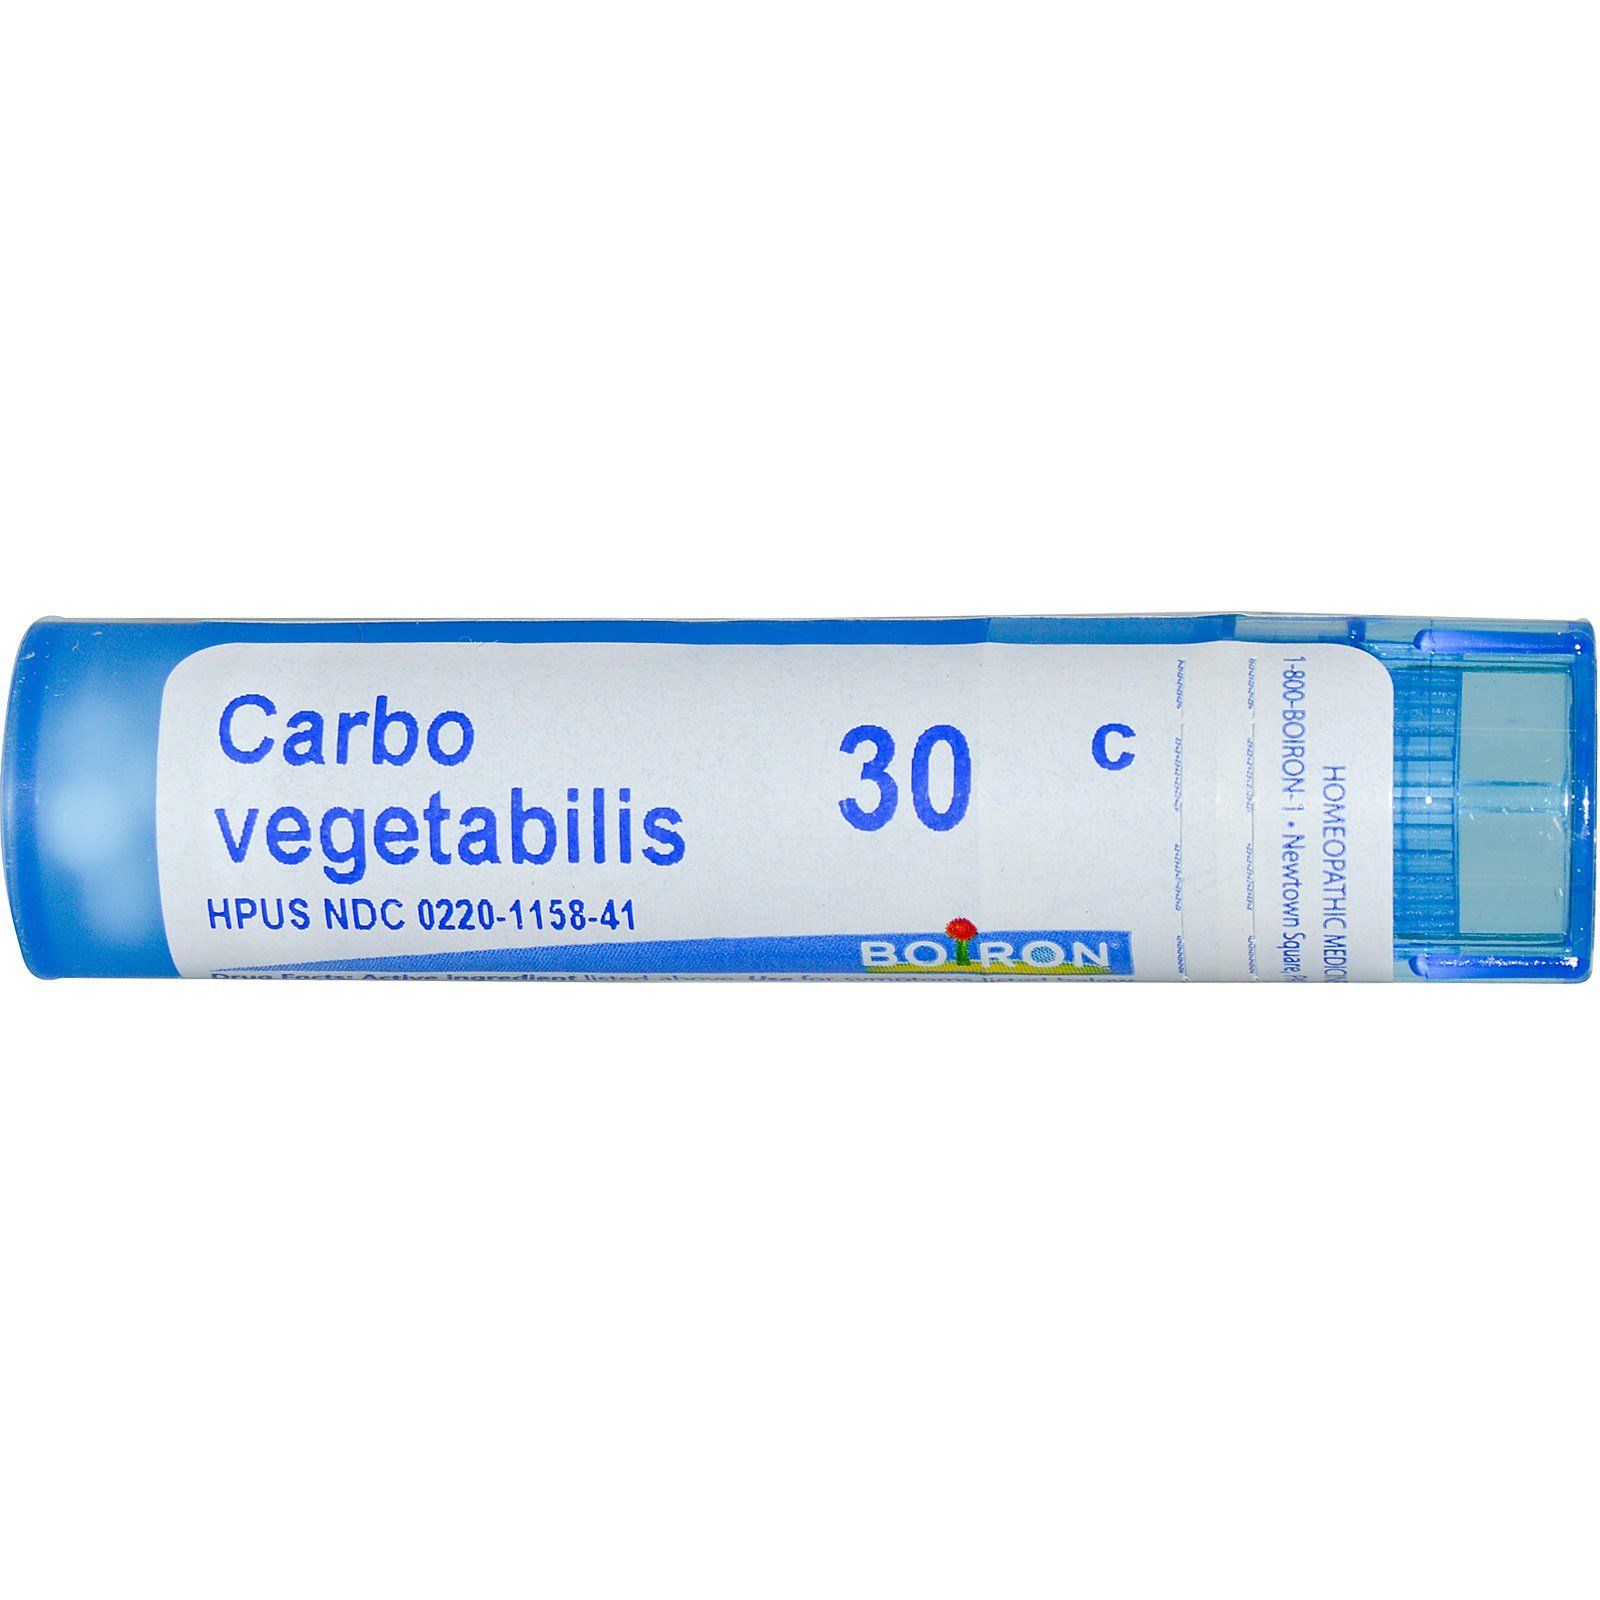 Карбо вегетабилис 30C, Boiron, Single Remedies, прибл. 80 гранул  .